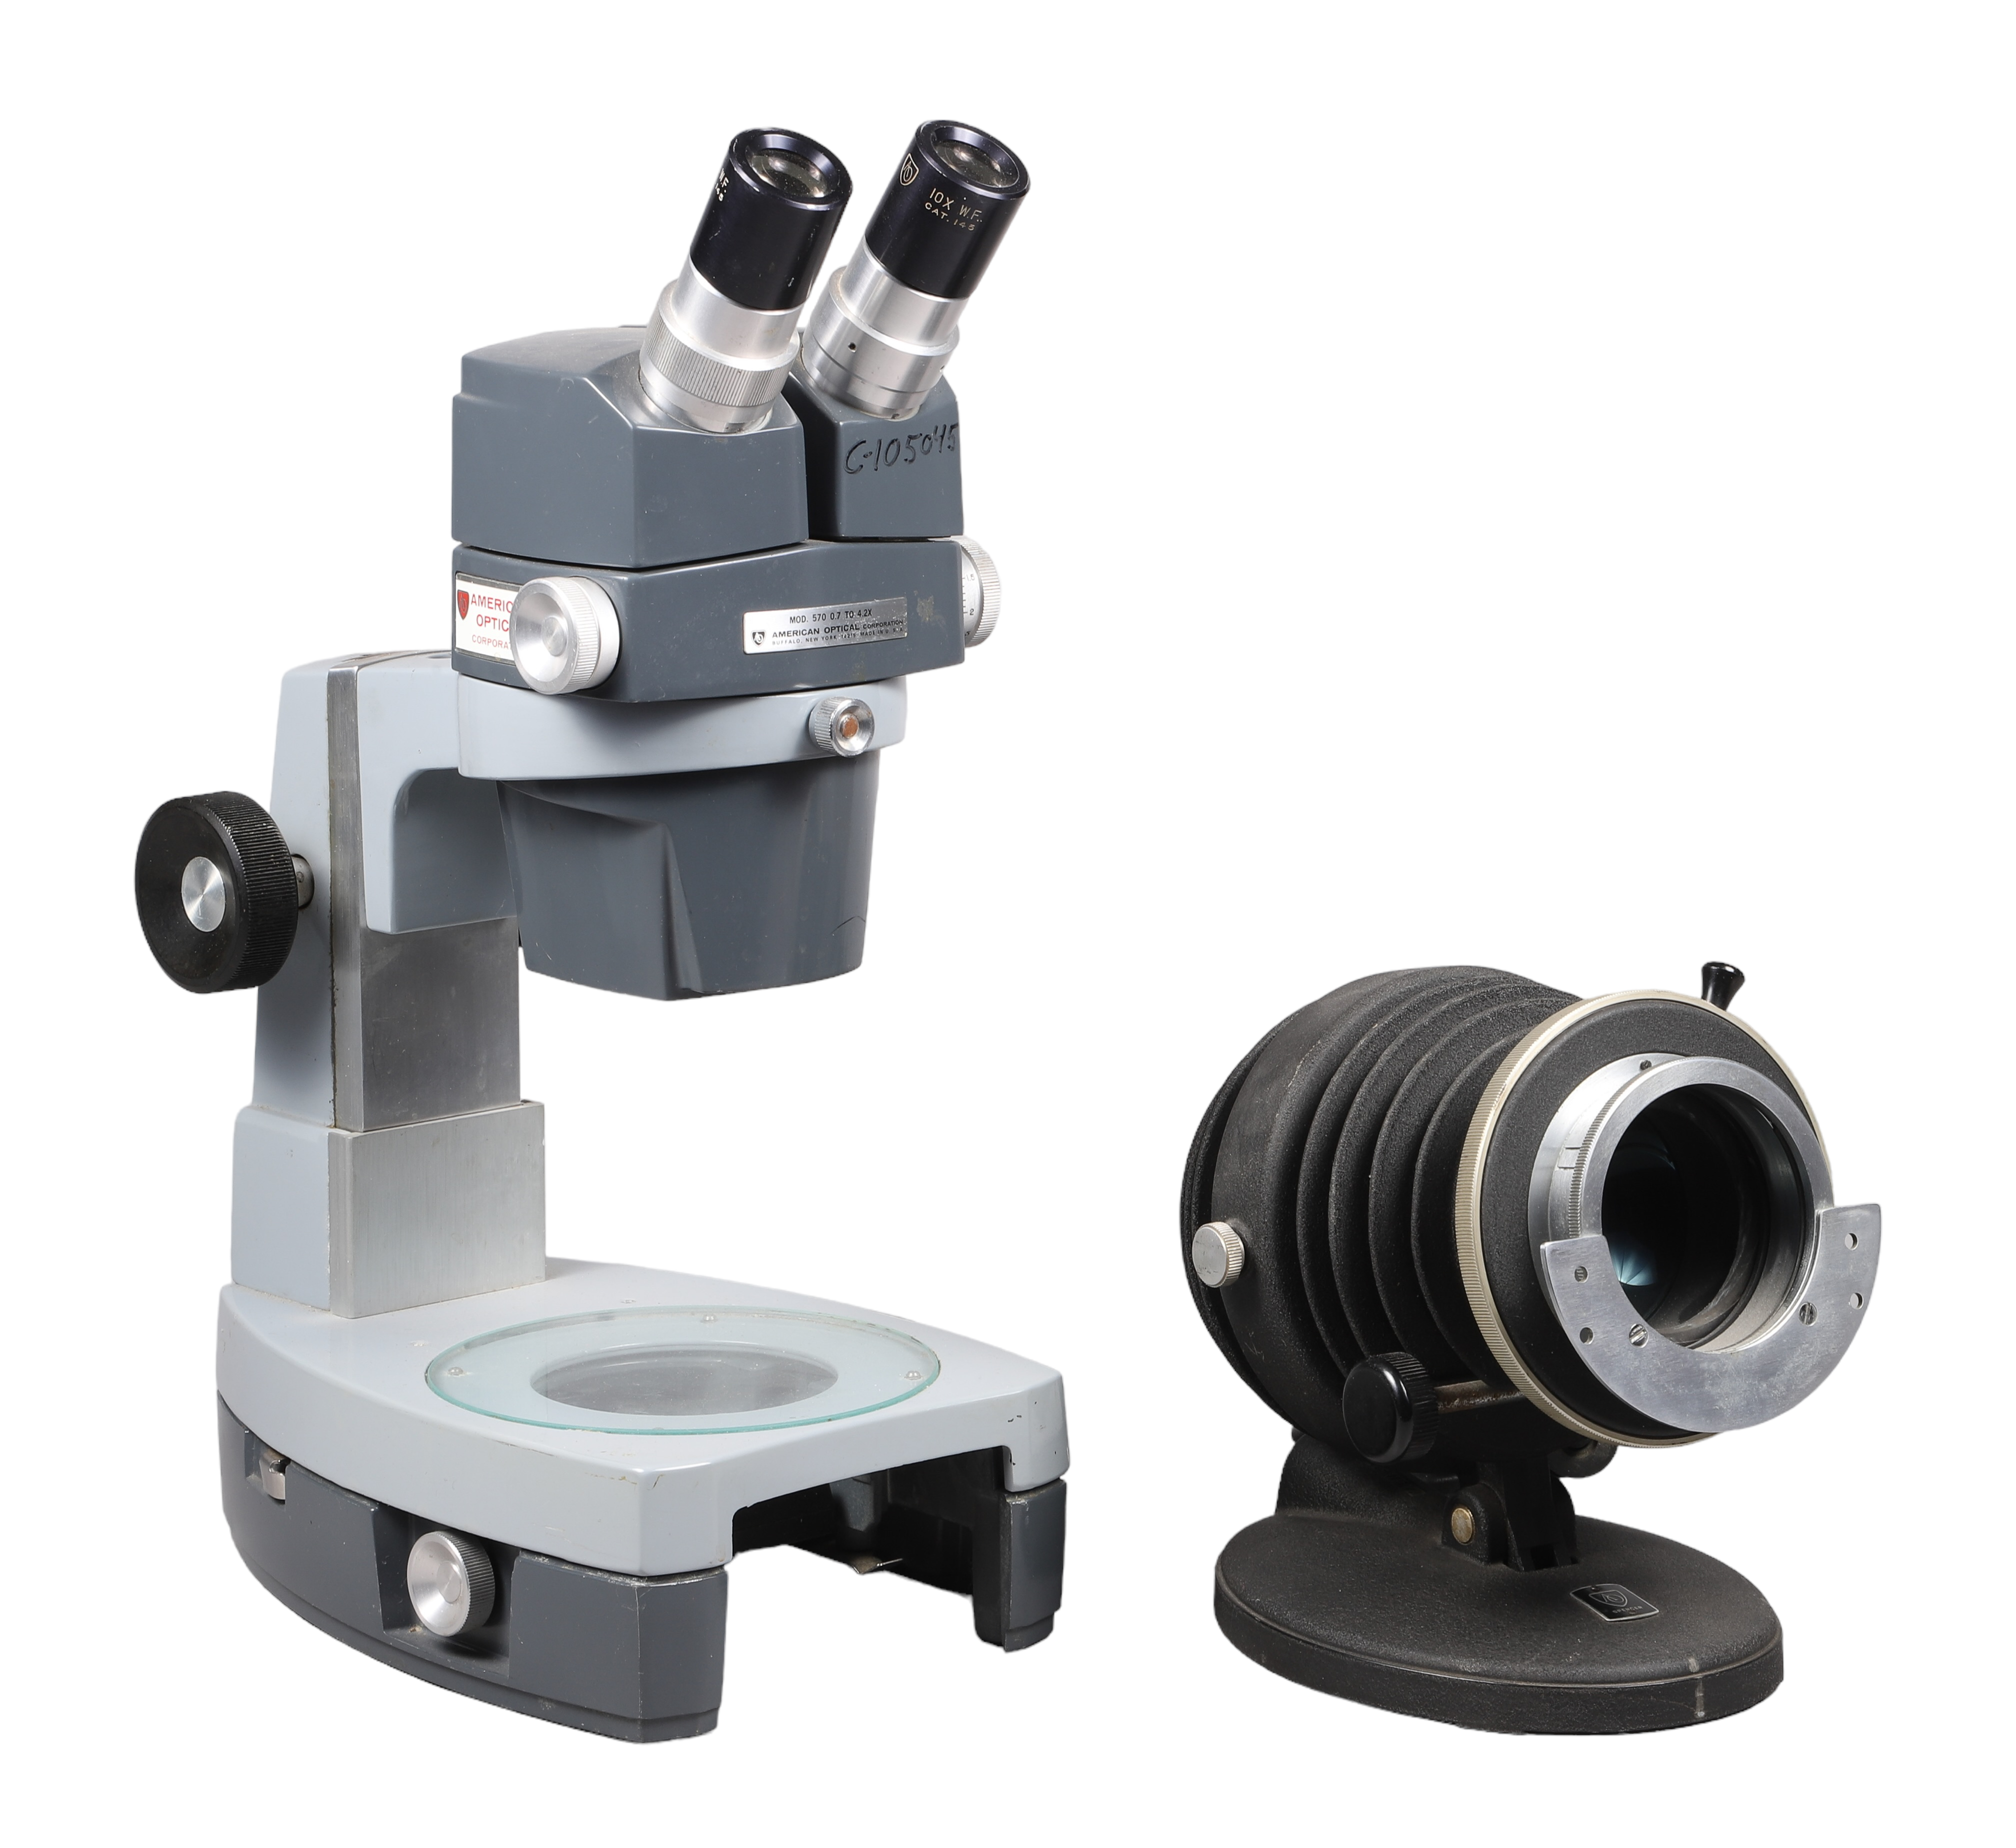 American Optical Stereo Microscope  317fd4